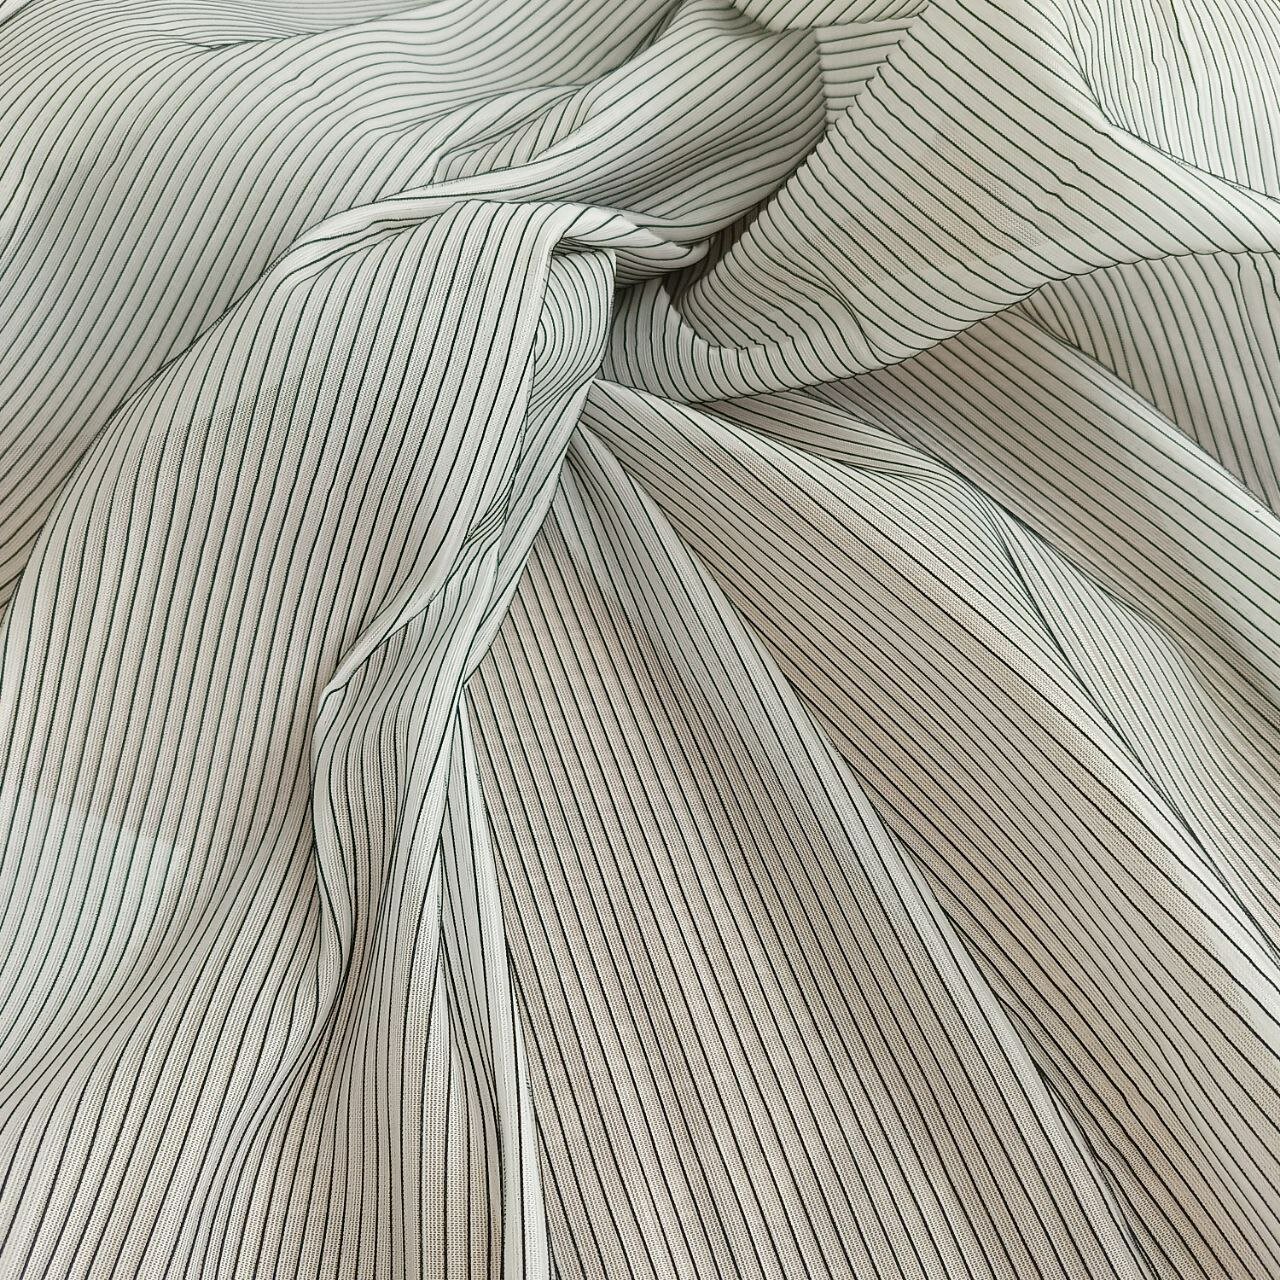 Ткань для шитья , с эффектом плиссе сетка для юбки и отделки, 150*100 см.